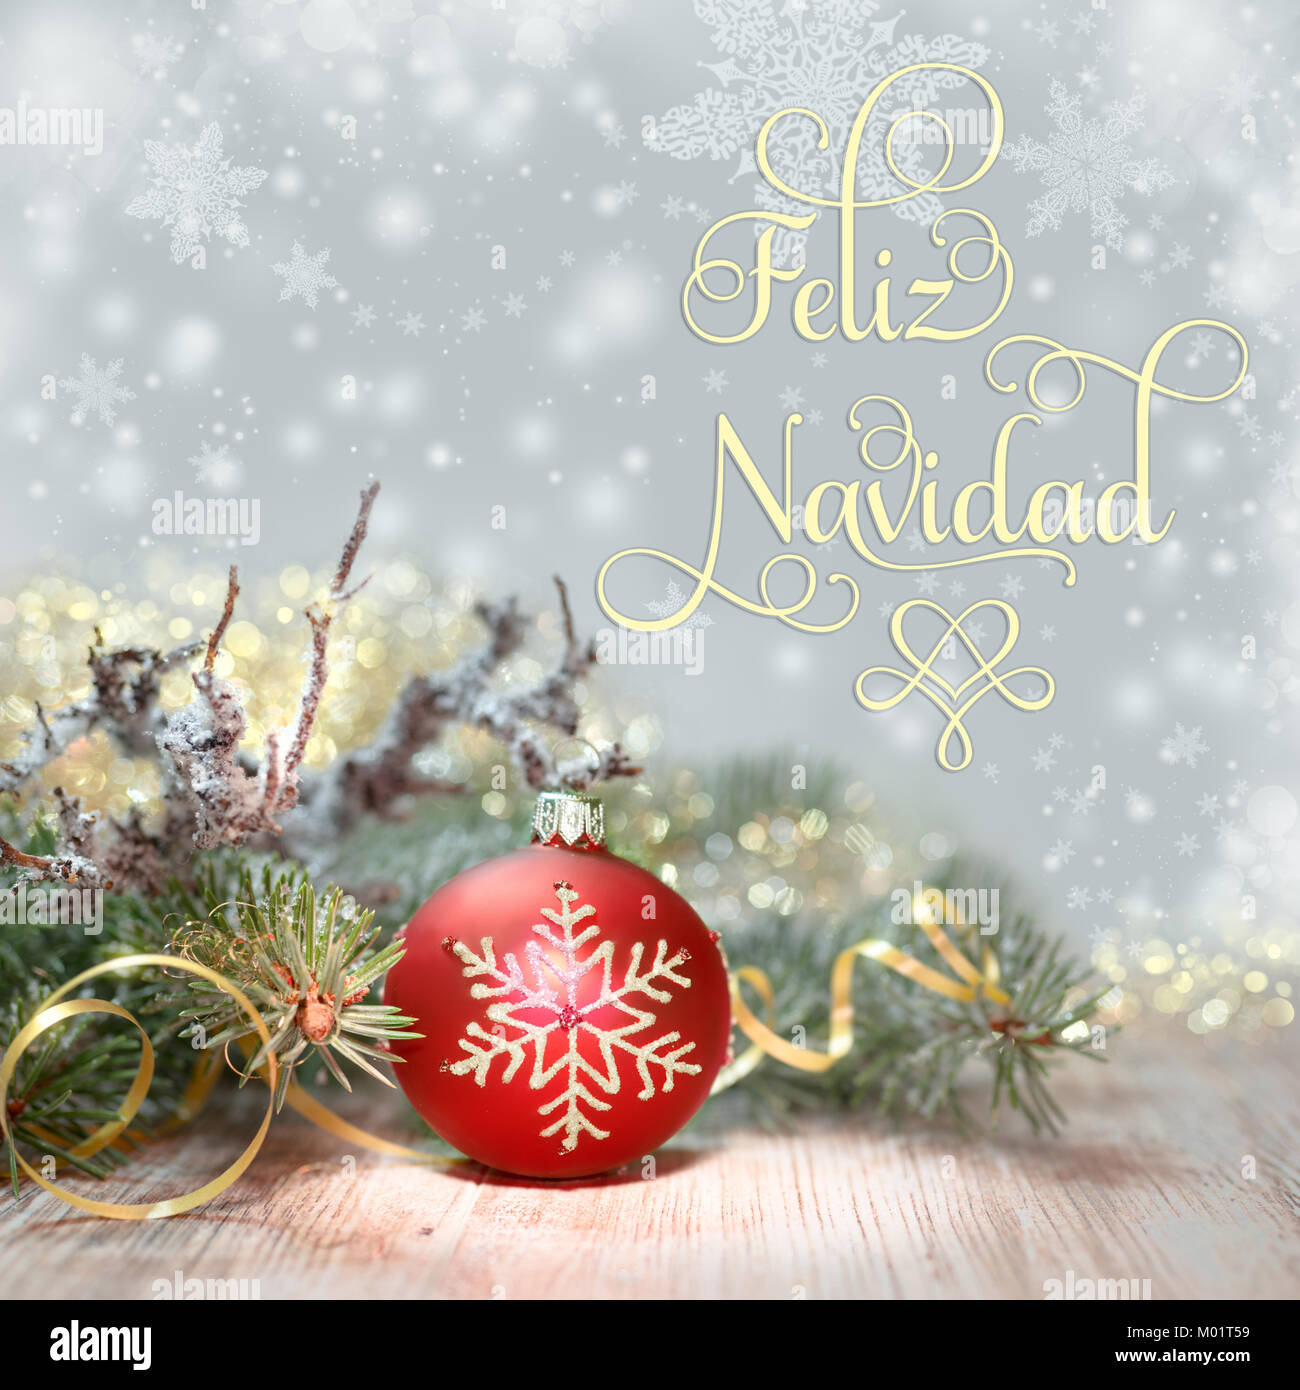 Árbol de Navidad decorado y adornos de color rojo, el texto "Feliz Navidad",  o "Merry Christmas" en español Fotografía de stock - Alamy